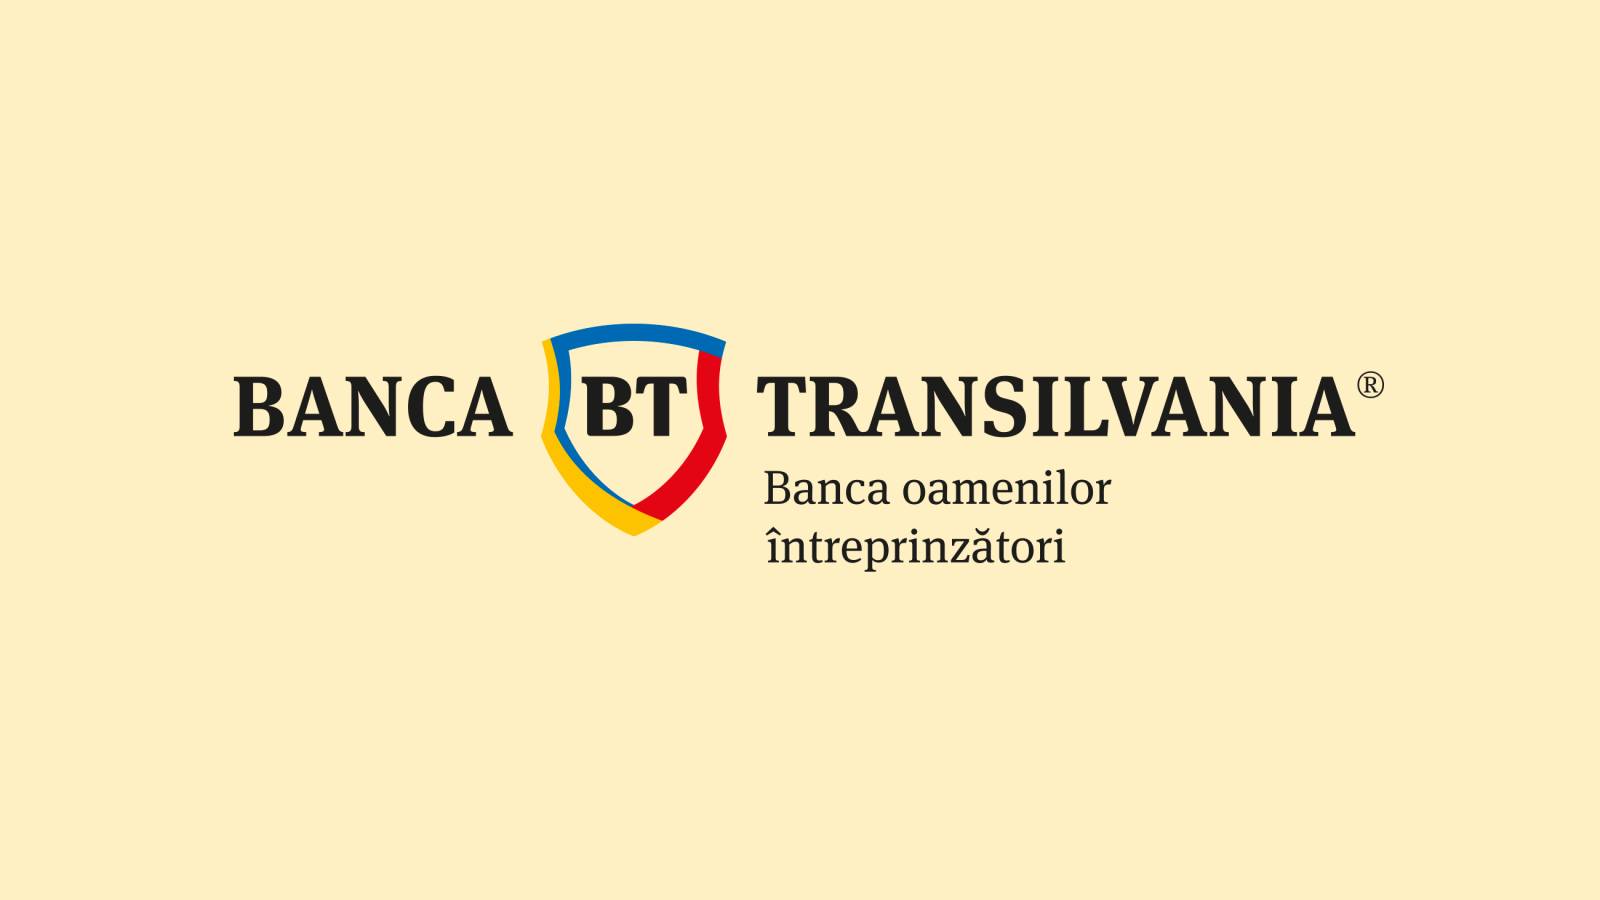 ATENTIE! BANCA Transilvania AVERTIZEAZA Clientii Toata Romania